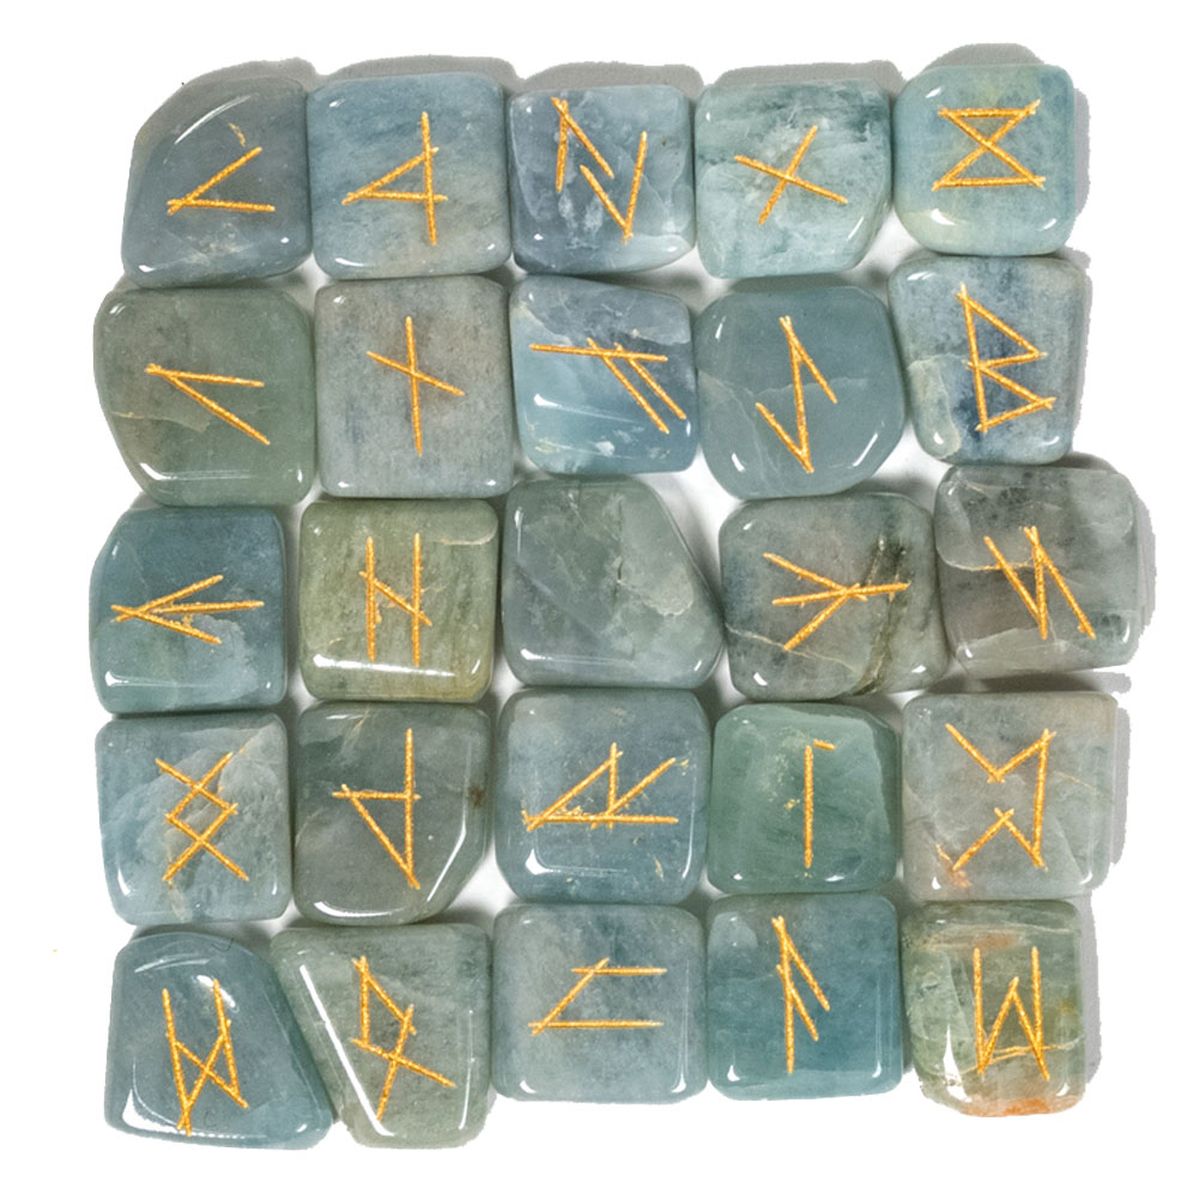 Aquamarine Rune Oracle set in velvet bag